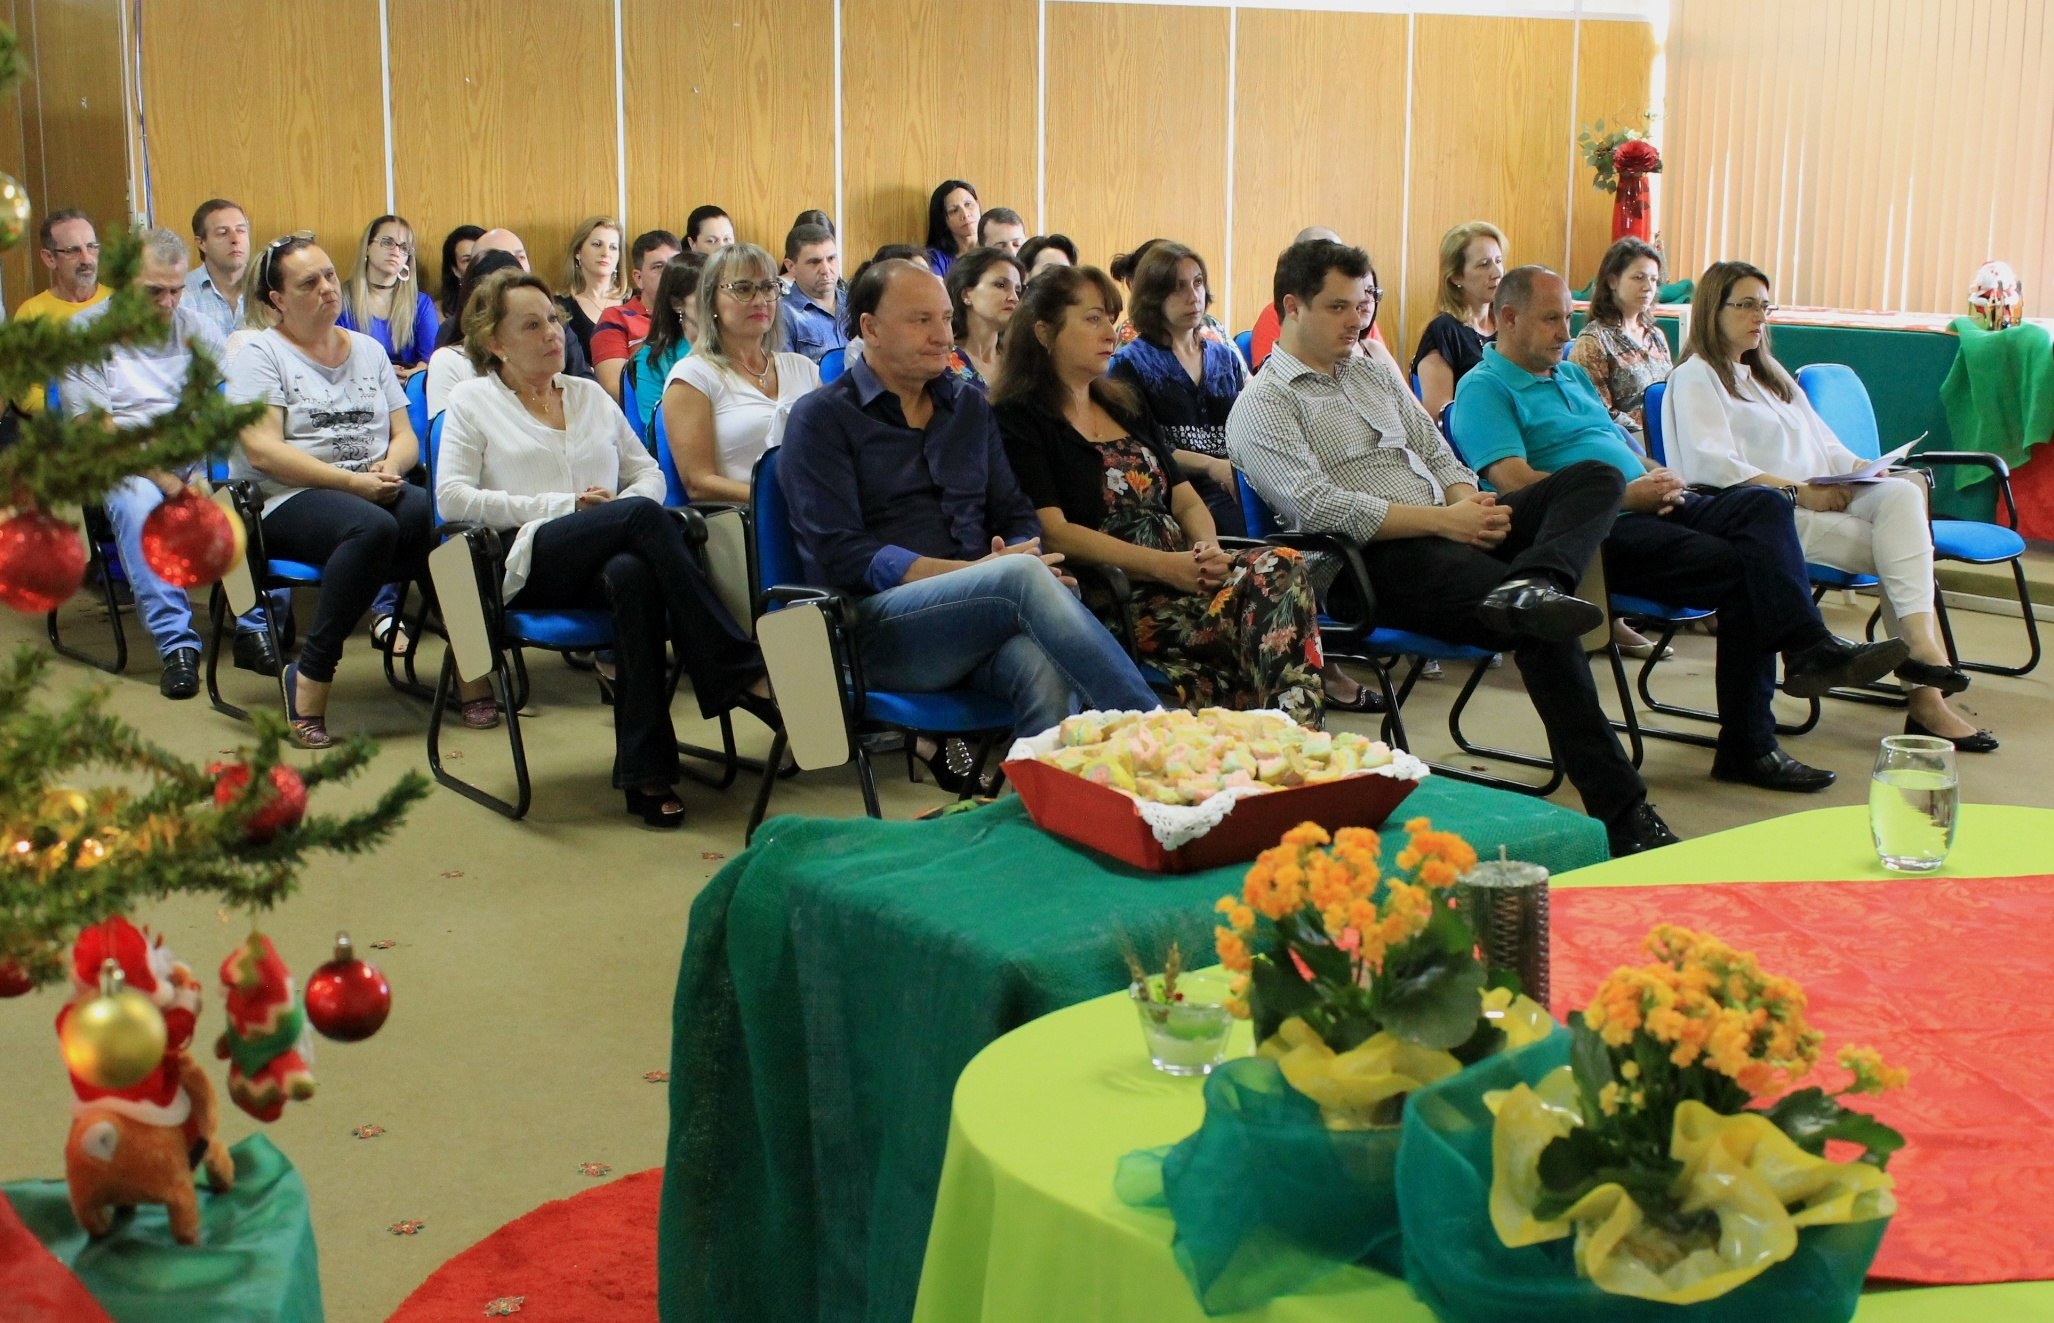 You are currently viewing Servidores do município participaram de Celebração